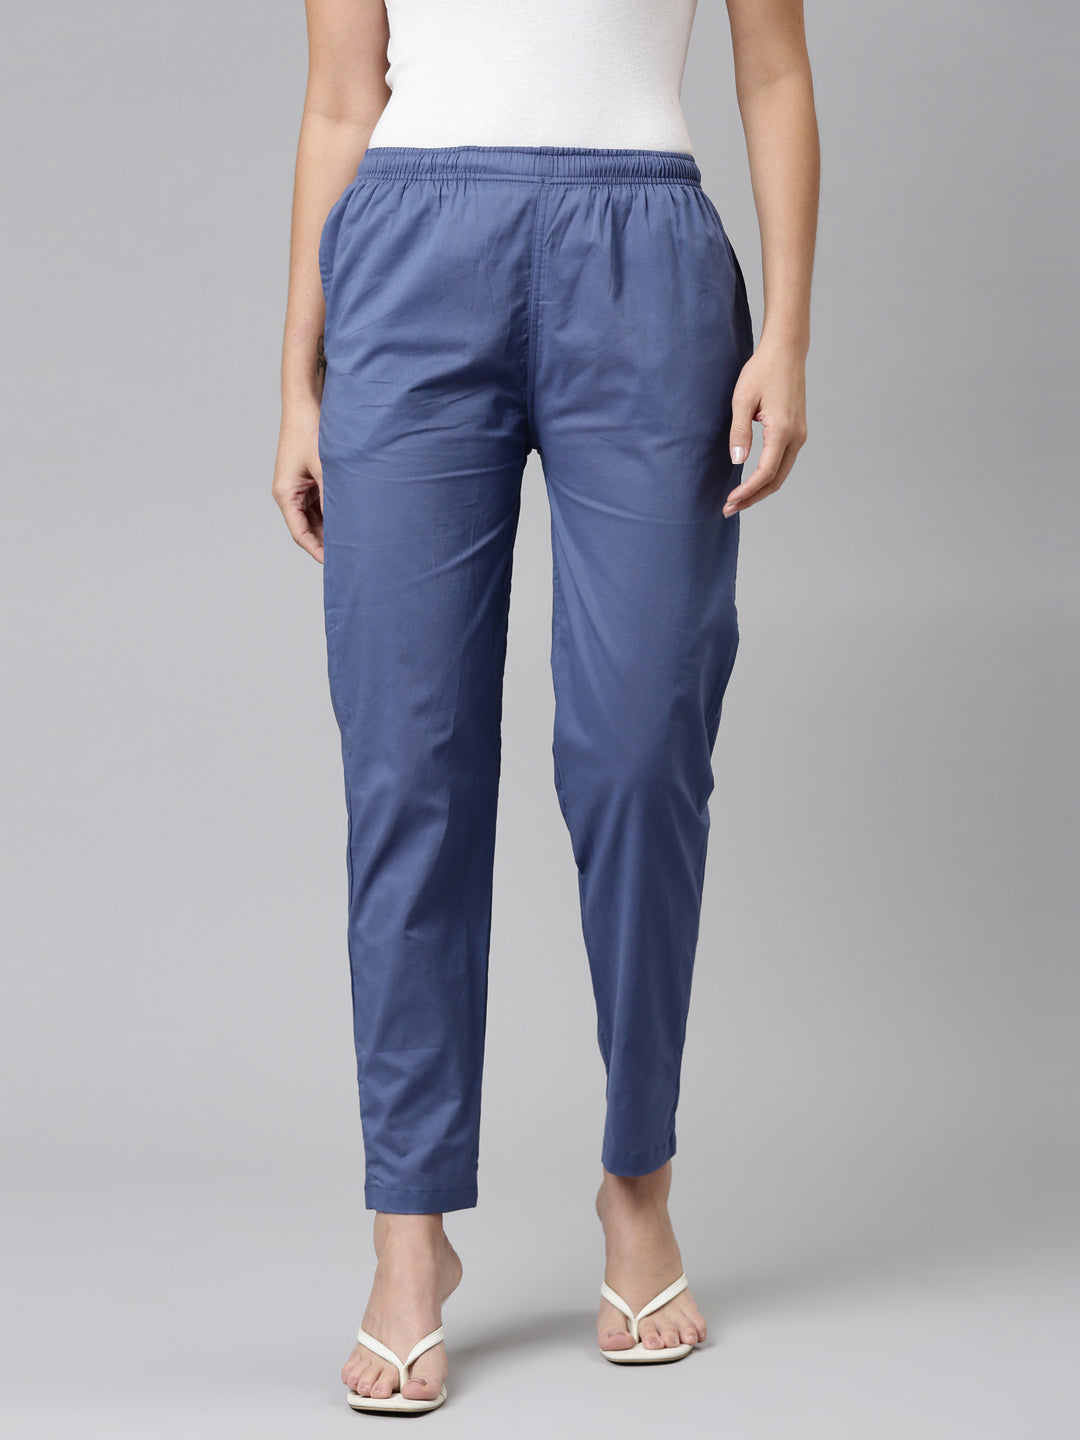 Women Solid Jean Blue Mid Rise Cotton Pants